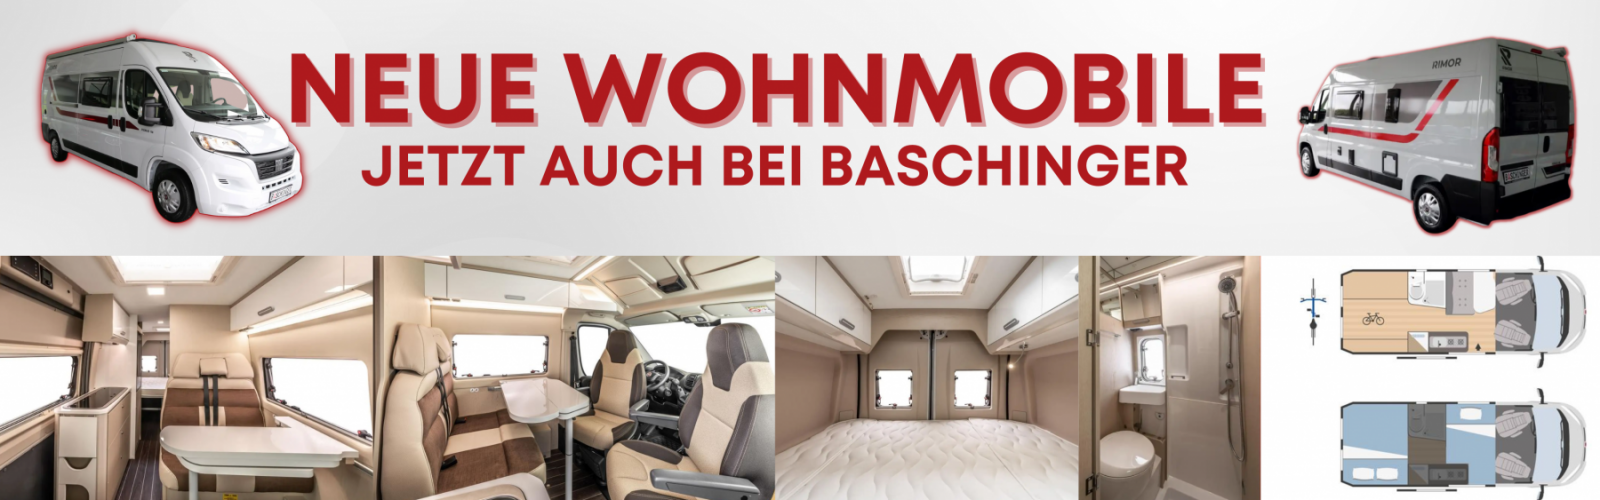 Wohnwagen jetzt auch bei Baschinger bei Ing. Günther Baschinger GmbH in 